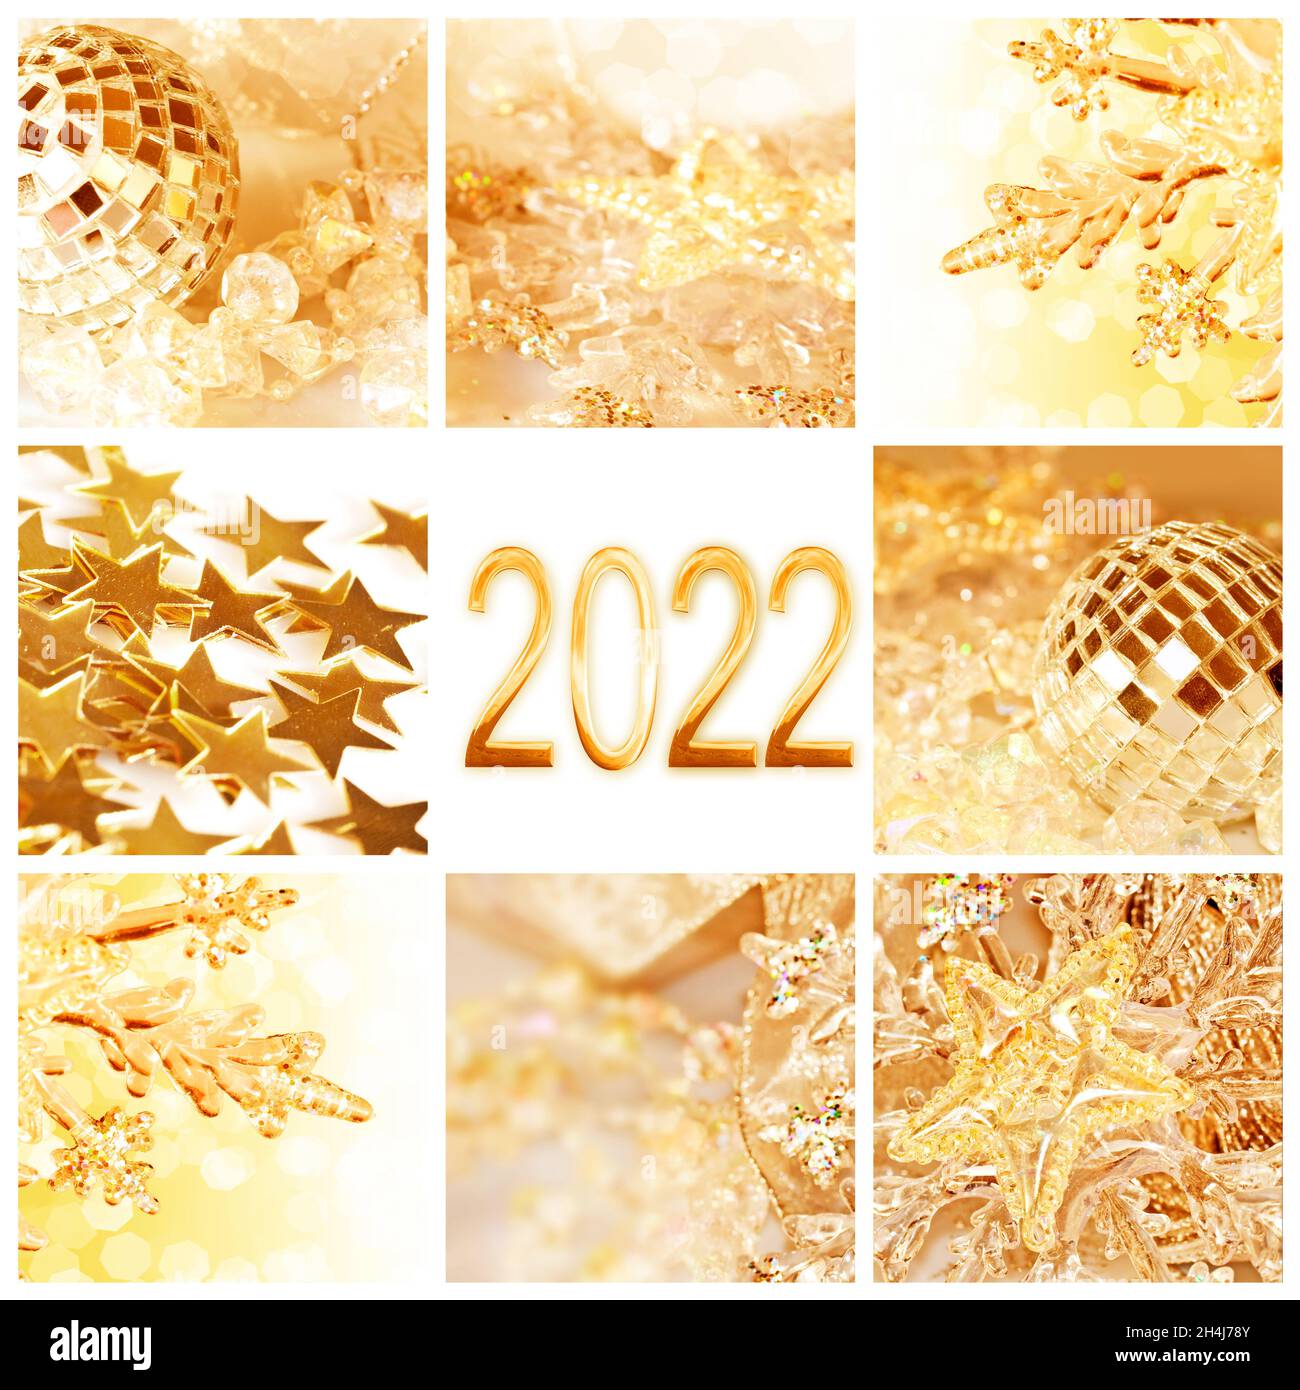 2022, tarjeta de felicitación cuadrada collage de adornos de navidad dorados Foto de stock